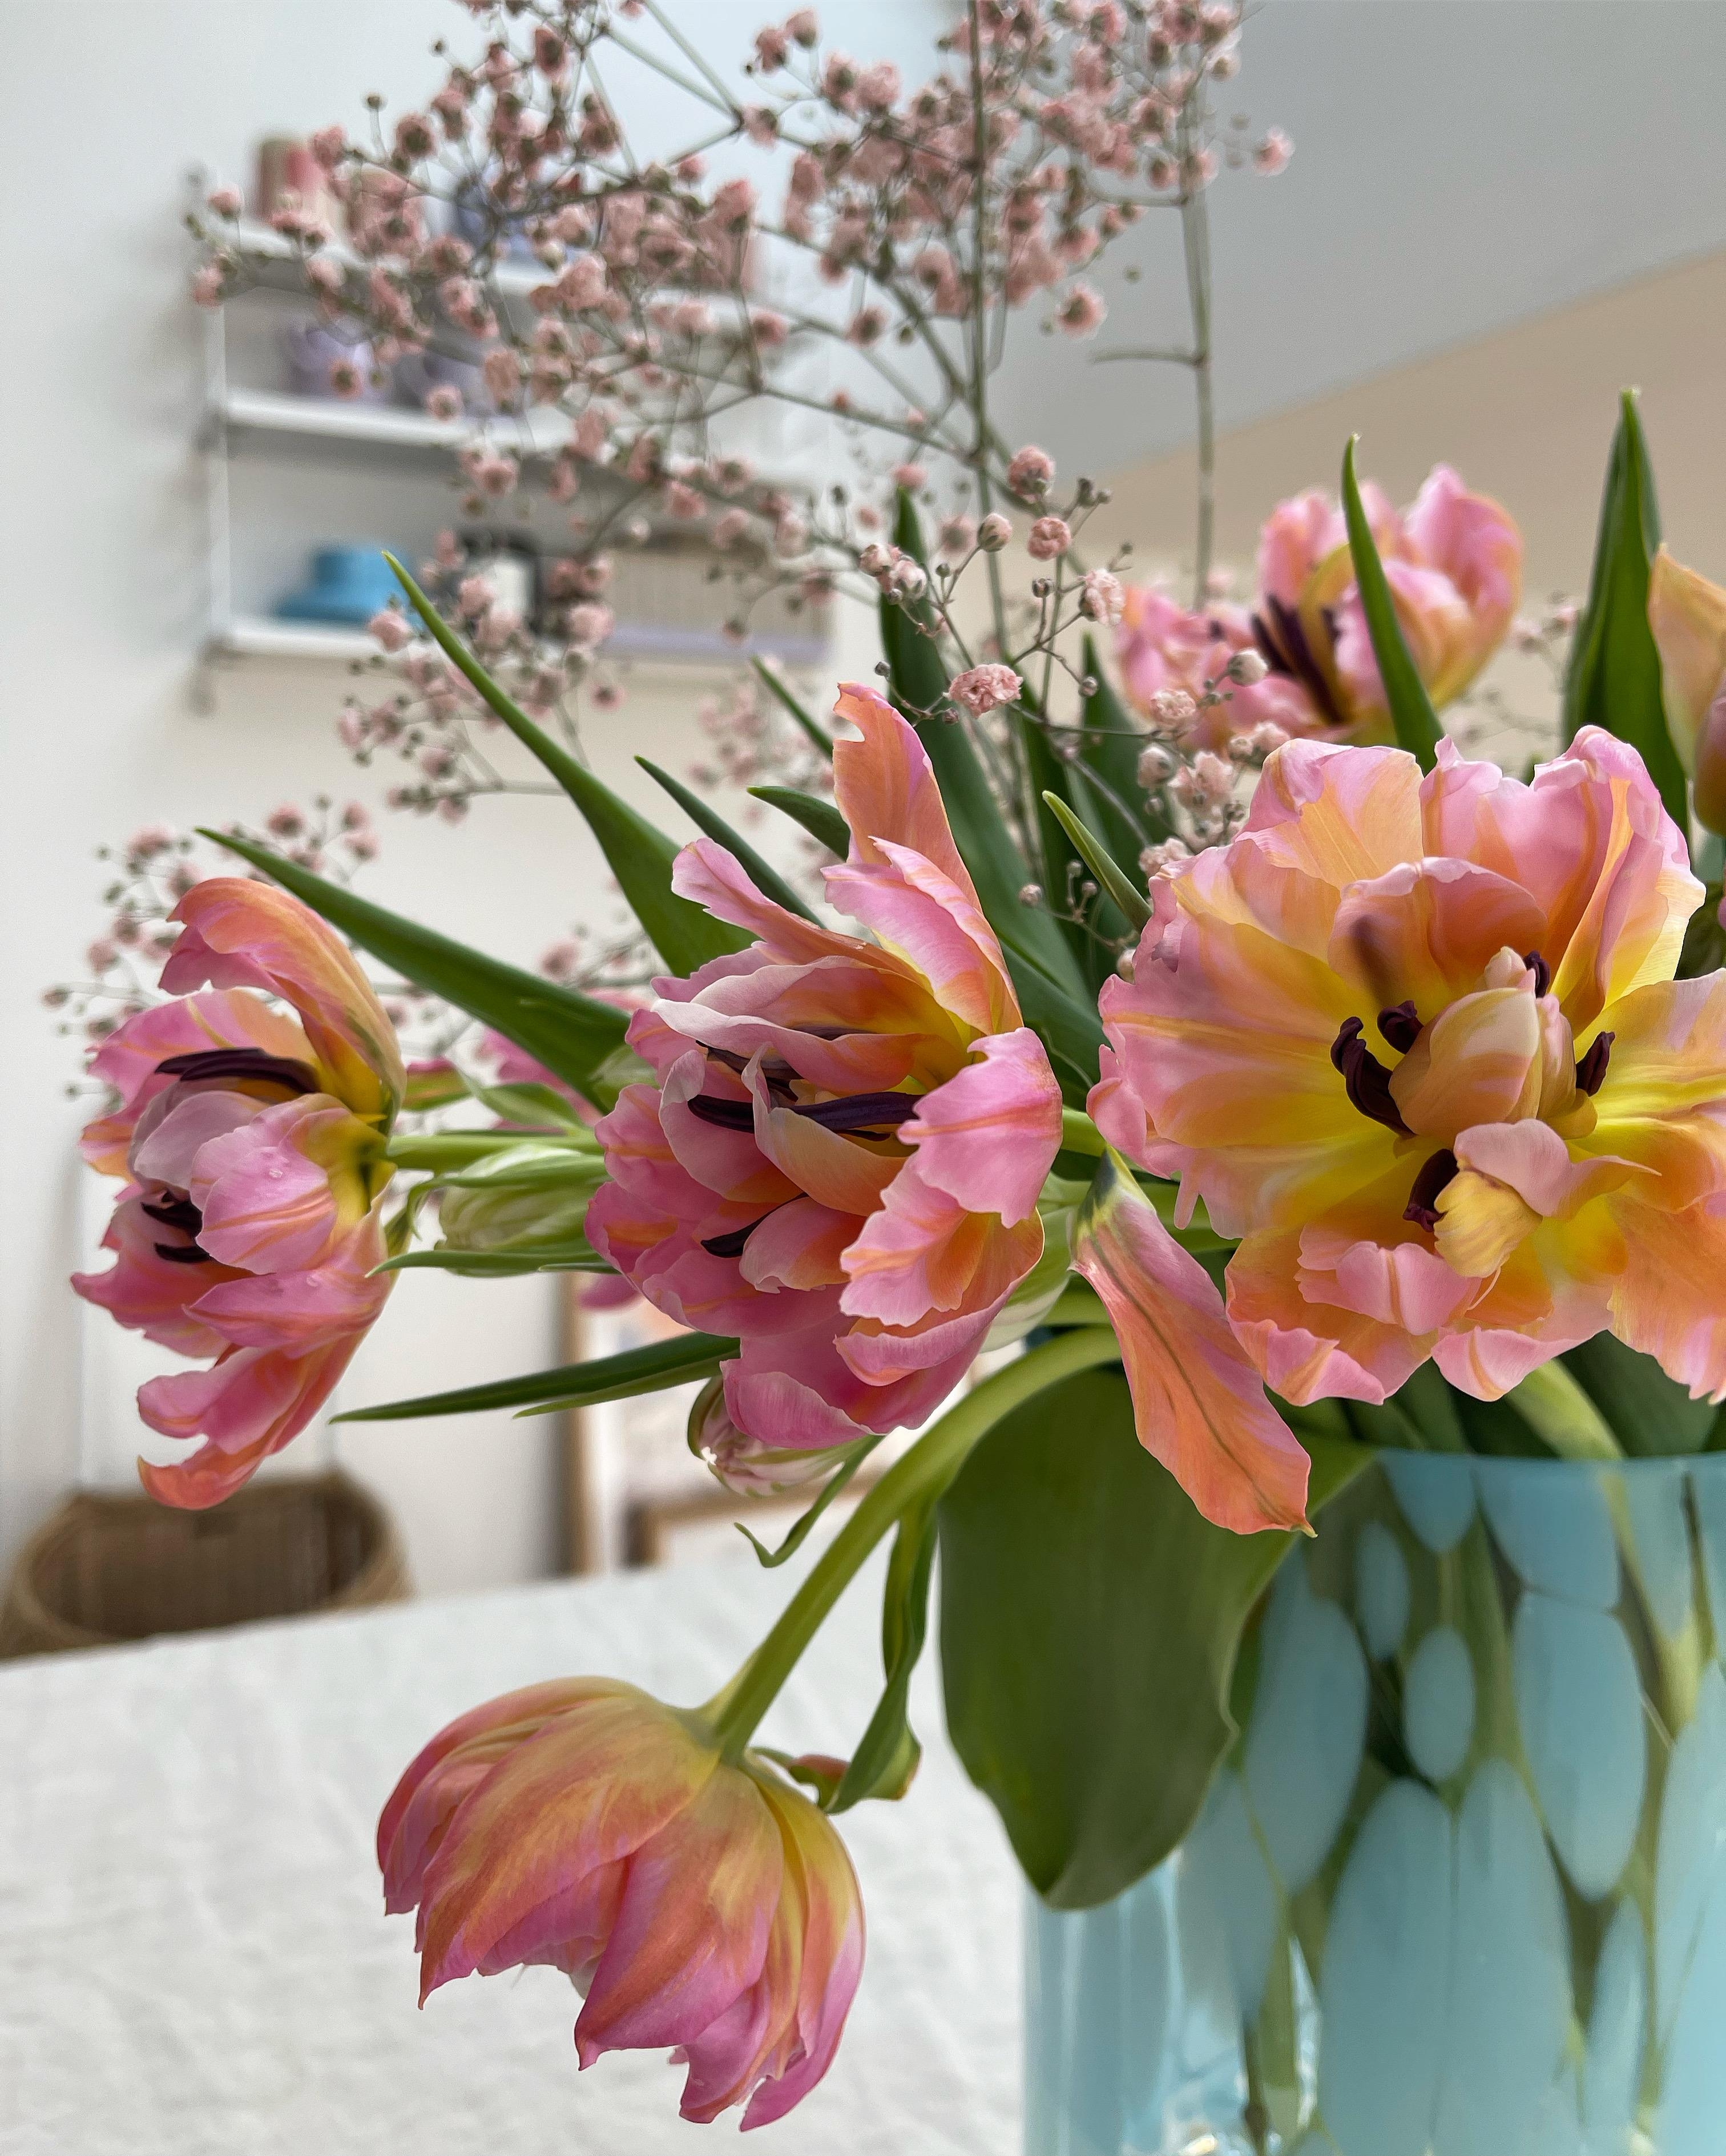 Die Blütenpracht und Farben! 💕
#frühblüher #freshflowers #tulpen #blumen